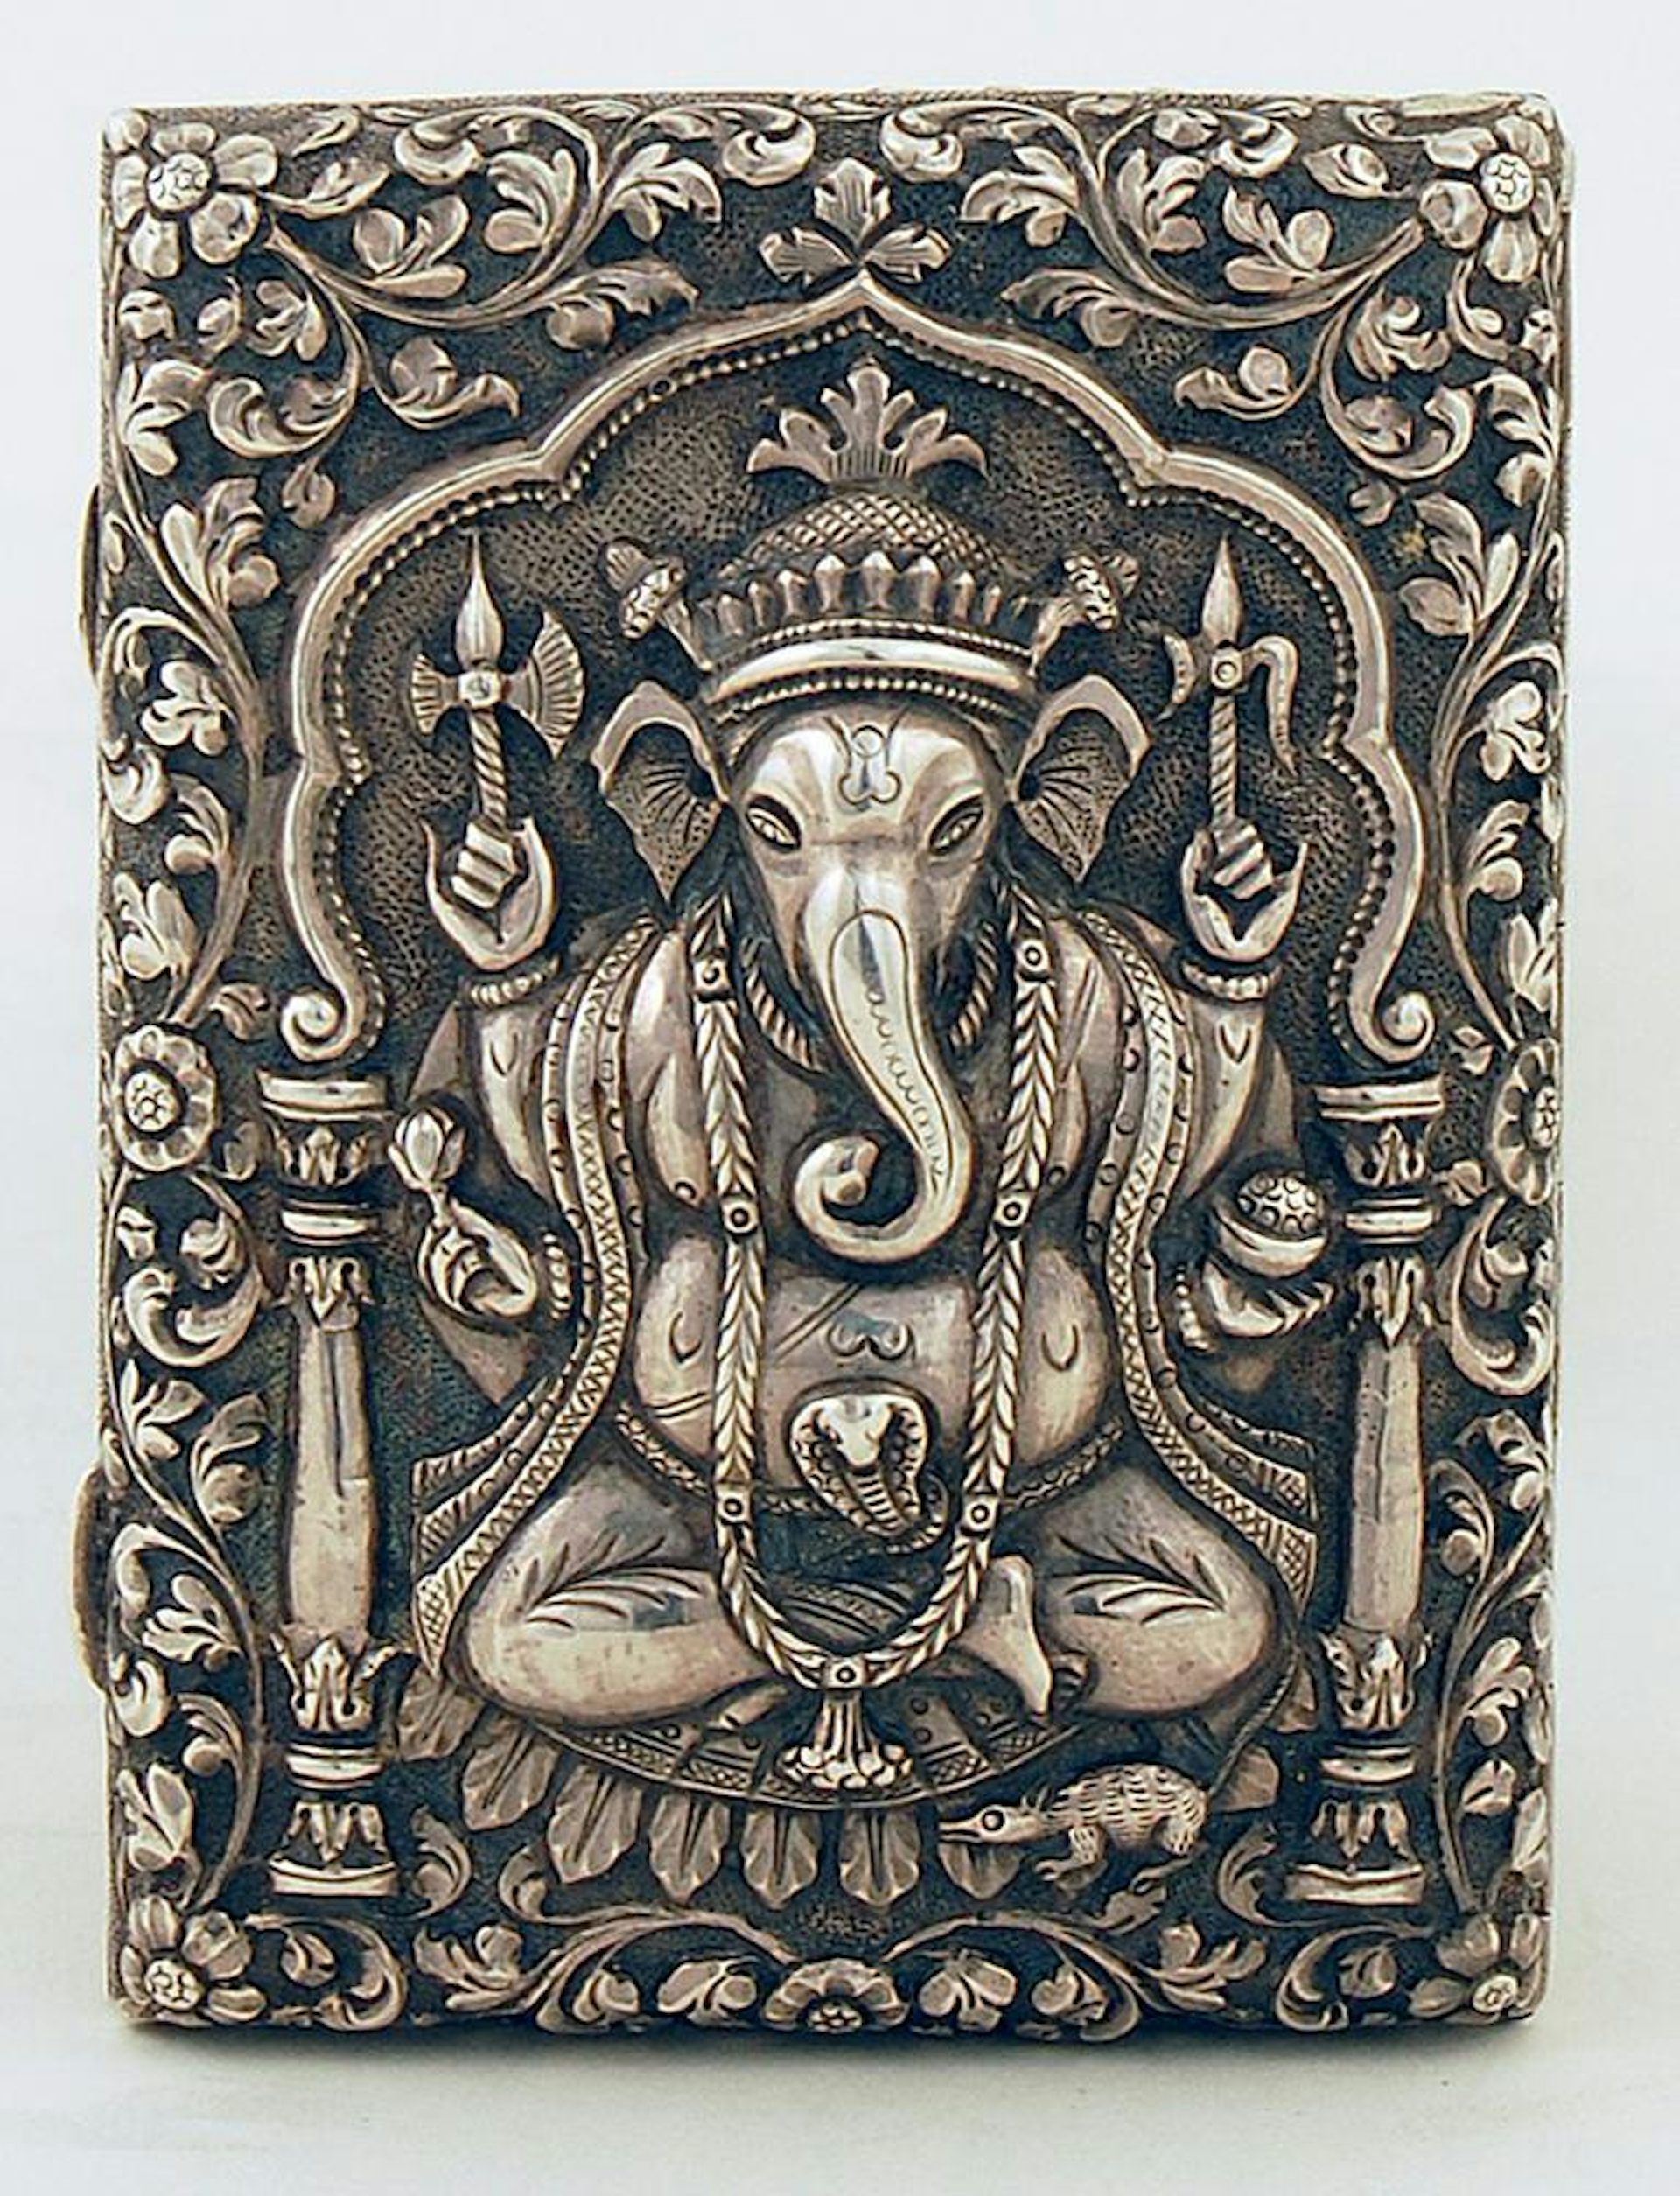 Ganesha arama kartı kutusu, yaklaşık 1880.